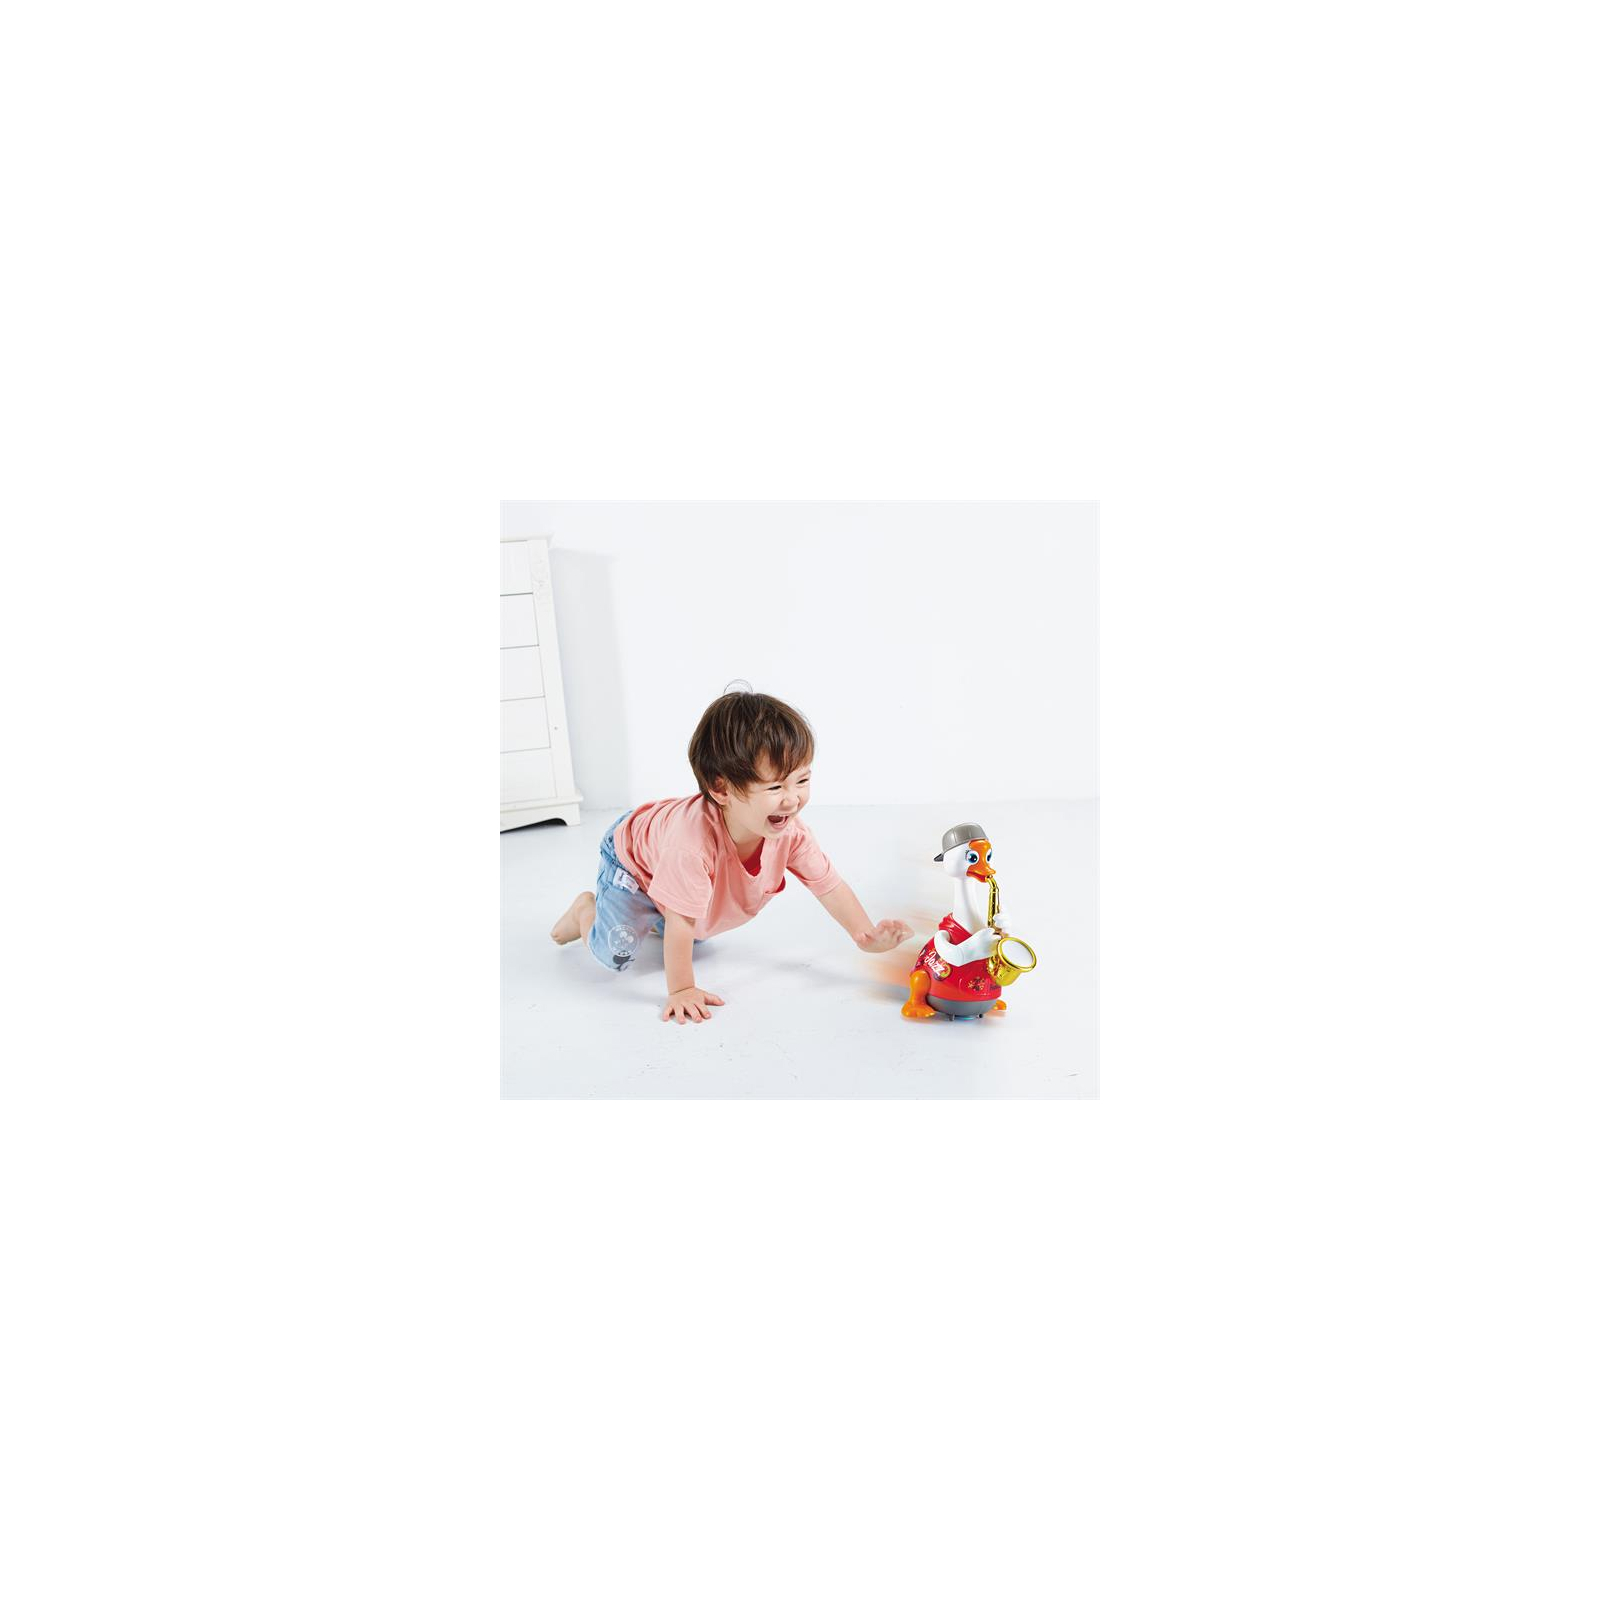 Развивающая игрушка Hola Toys Гусь-саксофонист, красный (6111-red) изображение 3